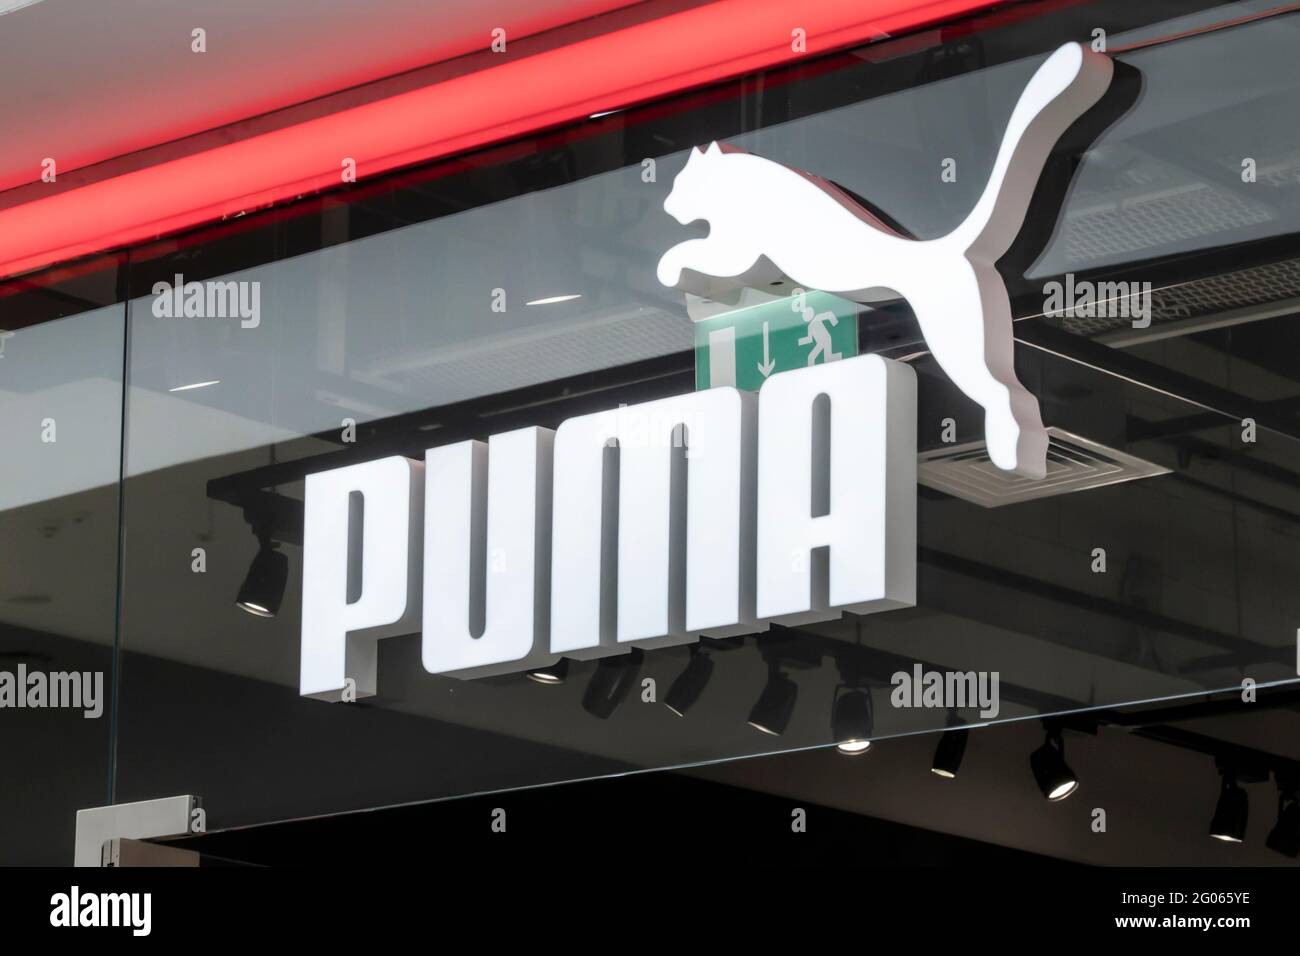 el de la marca puma, un cartel sobre la a la tienda de la marca alemana para la producción de ropa deportiva y accesorios. Krasnoyarsk, Rusia Fotografía de